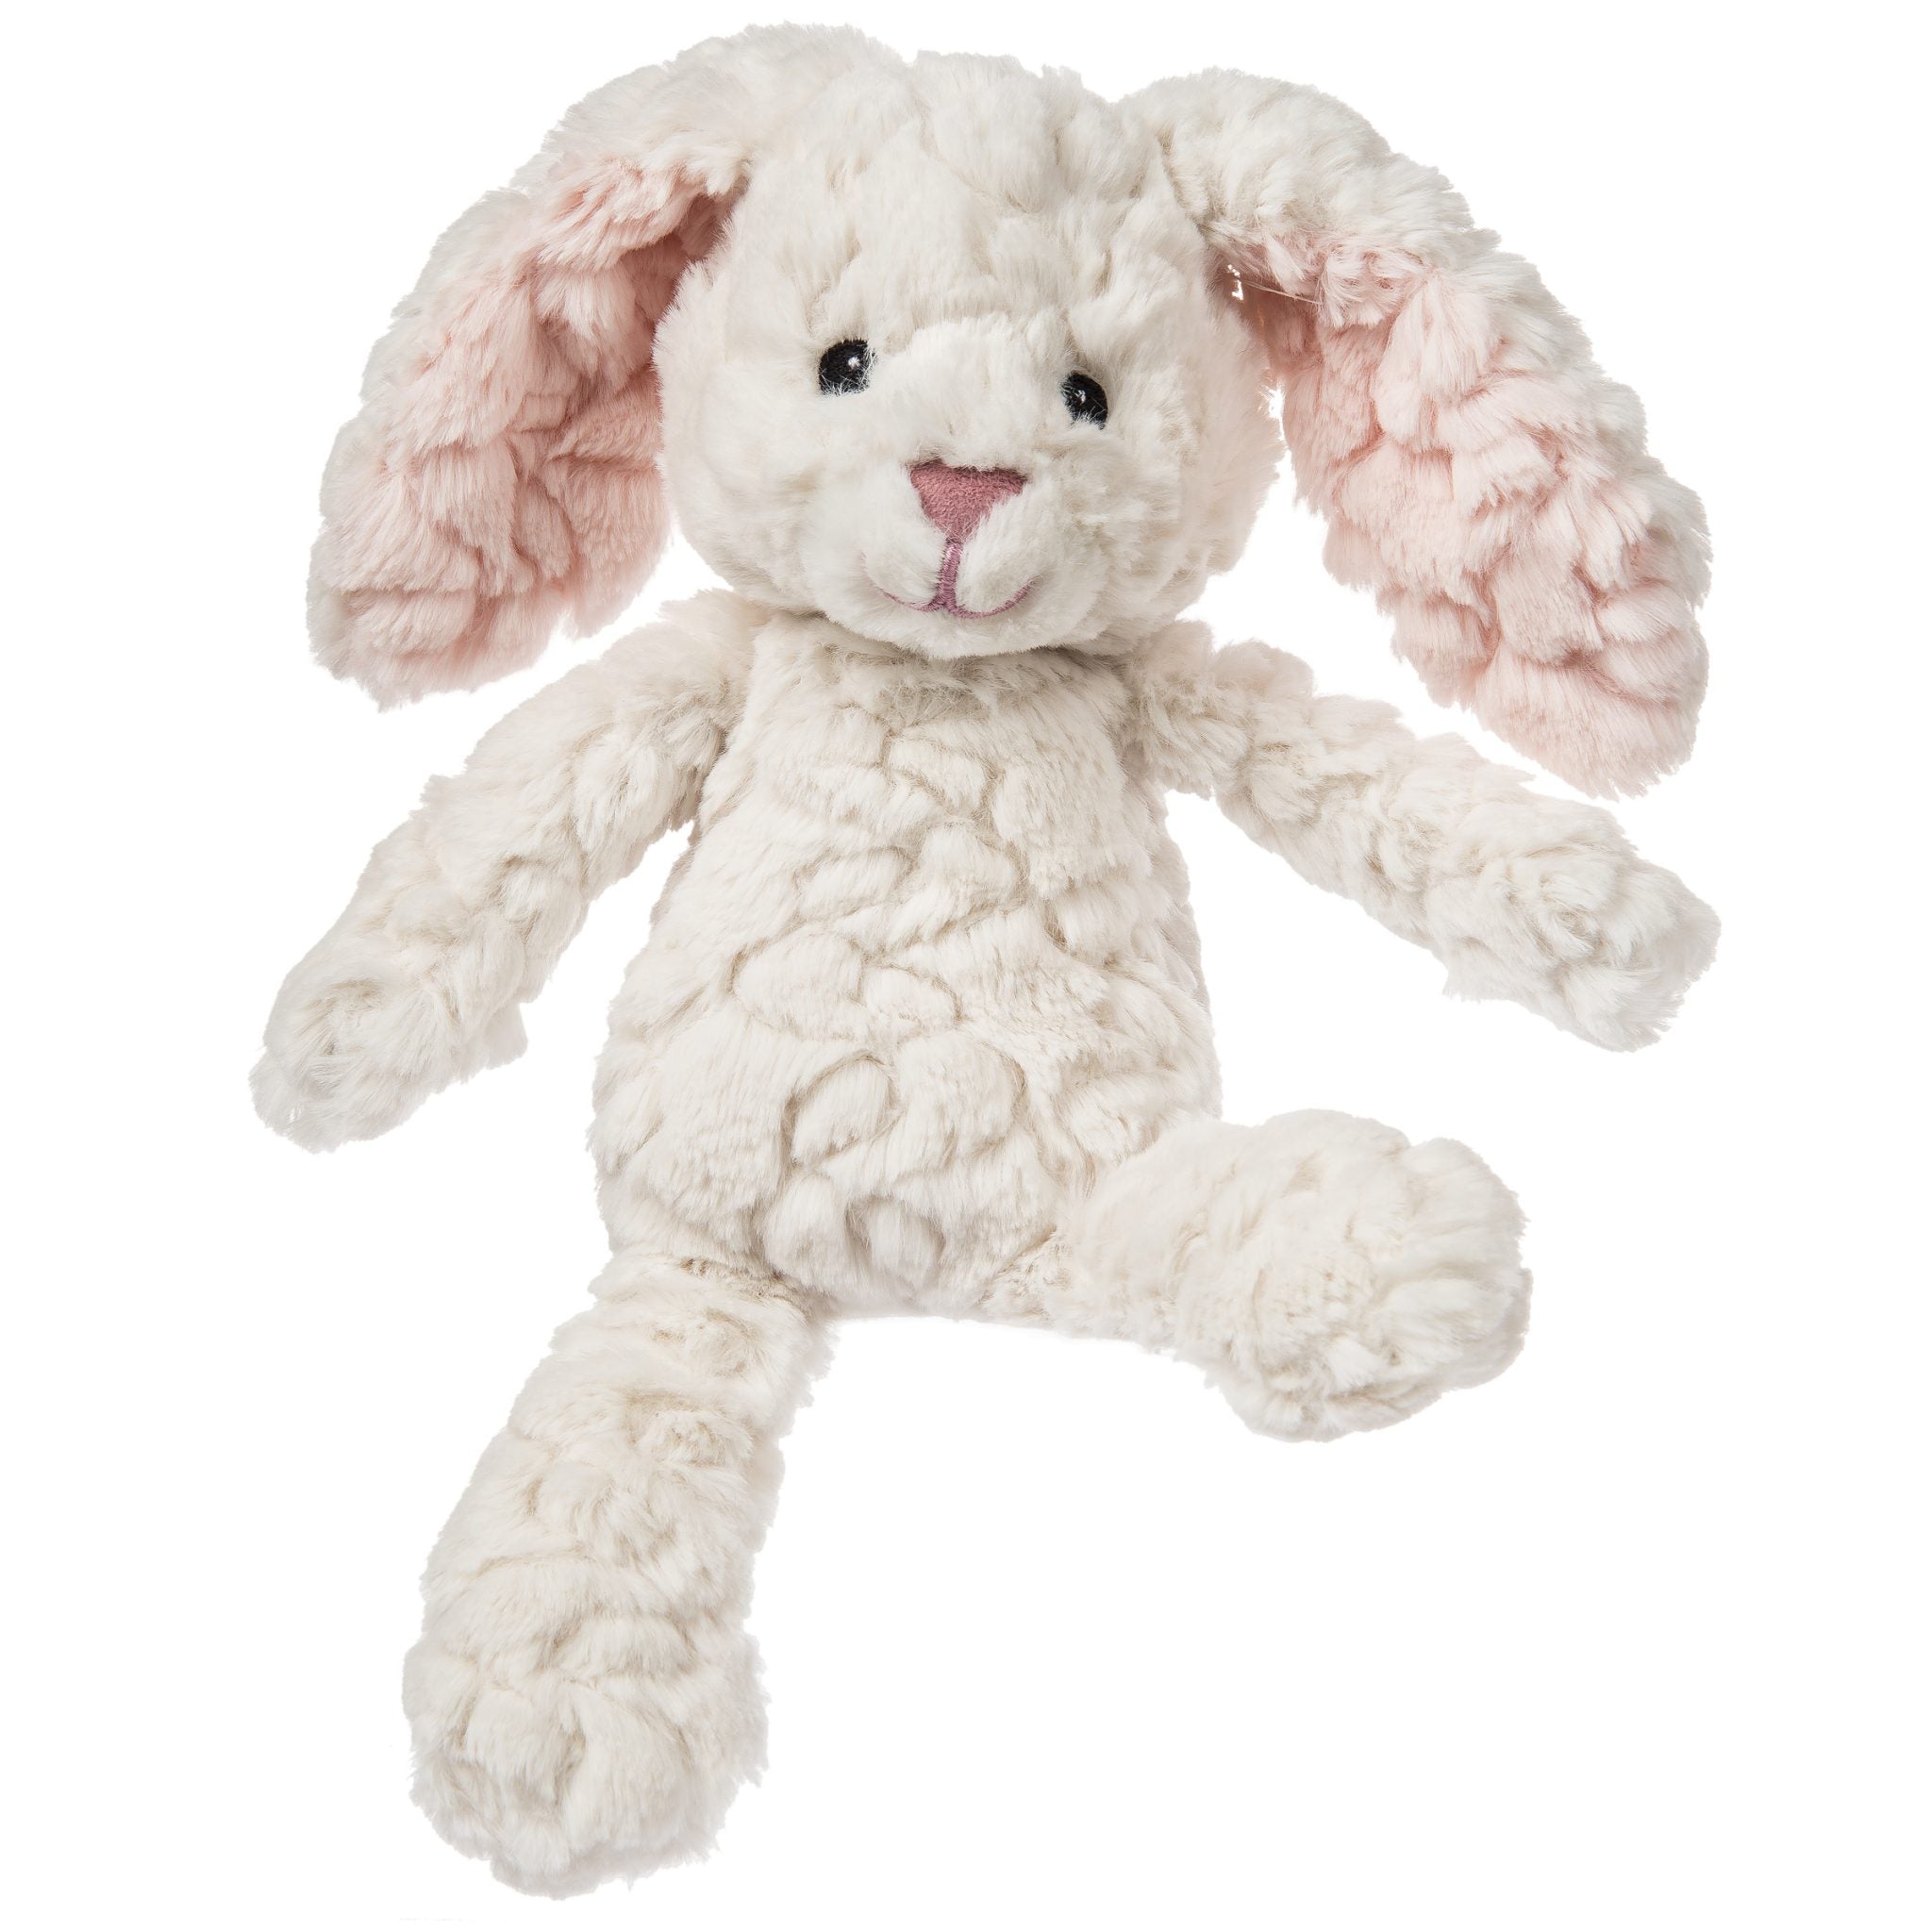 Cream bunny soft toy